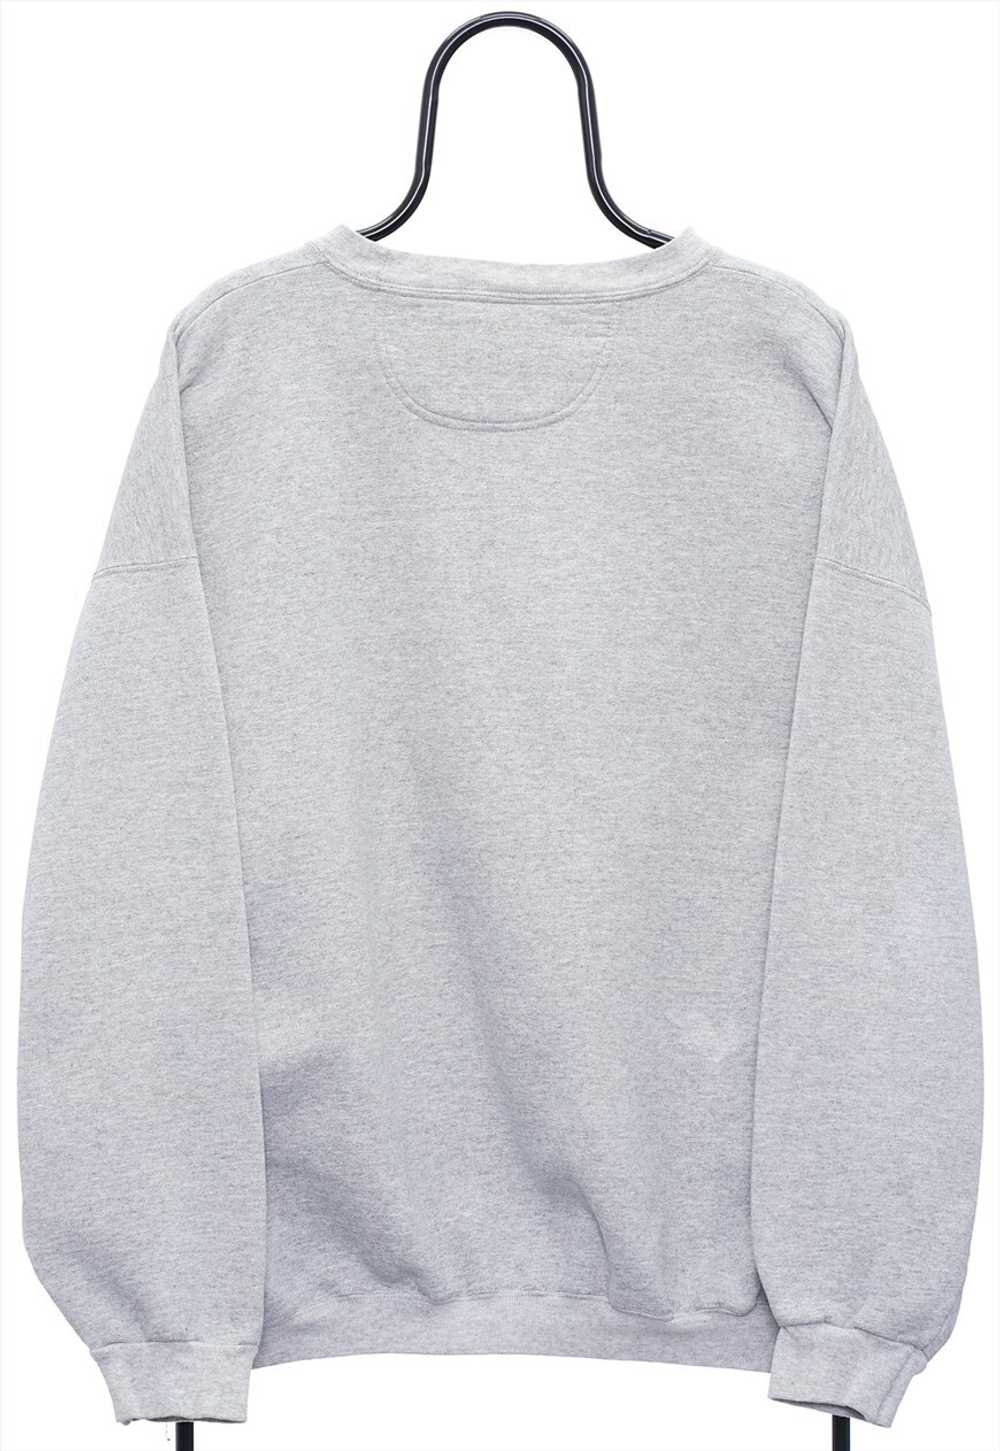 Vintage Carolina Tarheels NCAA Grey Sweatshirt Me… - image 2